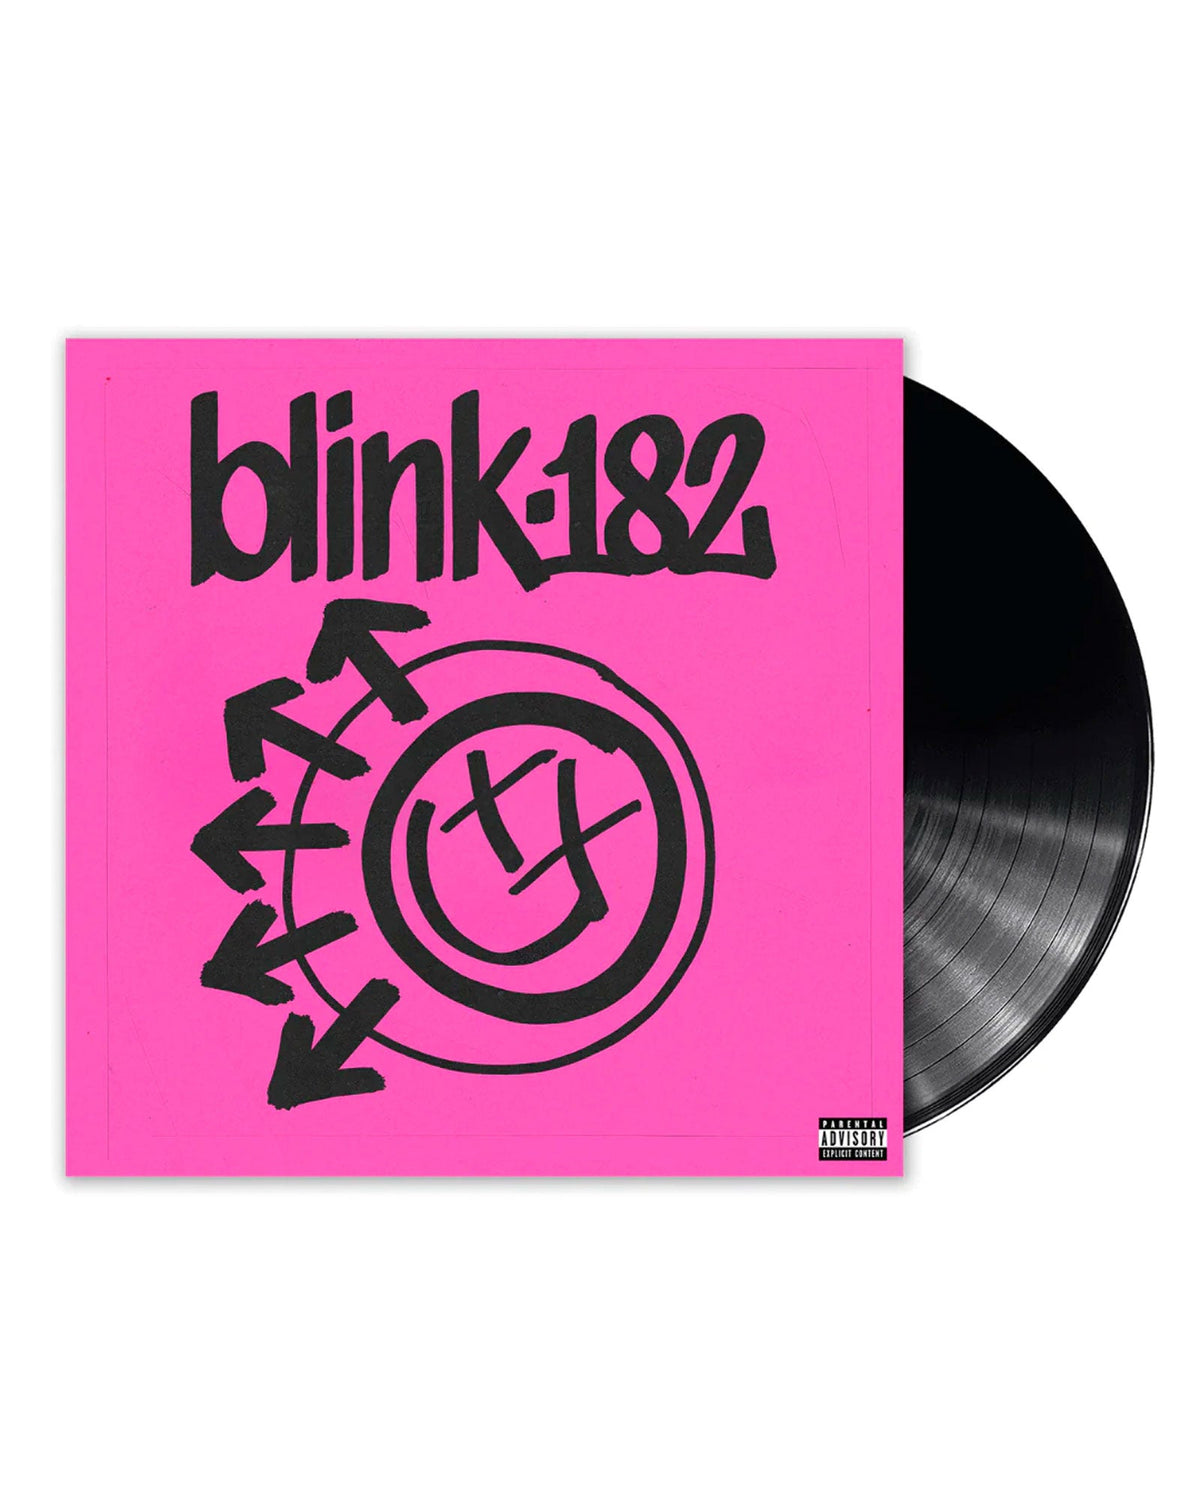 Blink-182 - LP Vinilo "One more time..." - D2fy · Rocktud - Rocktud